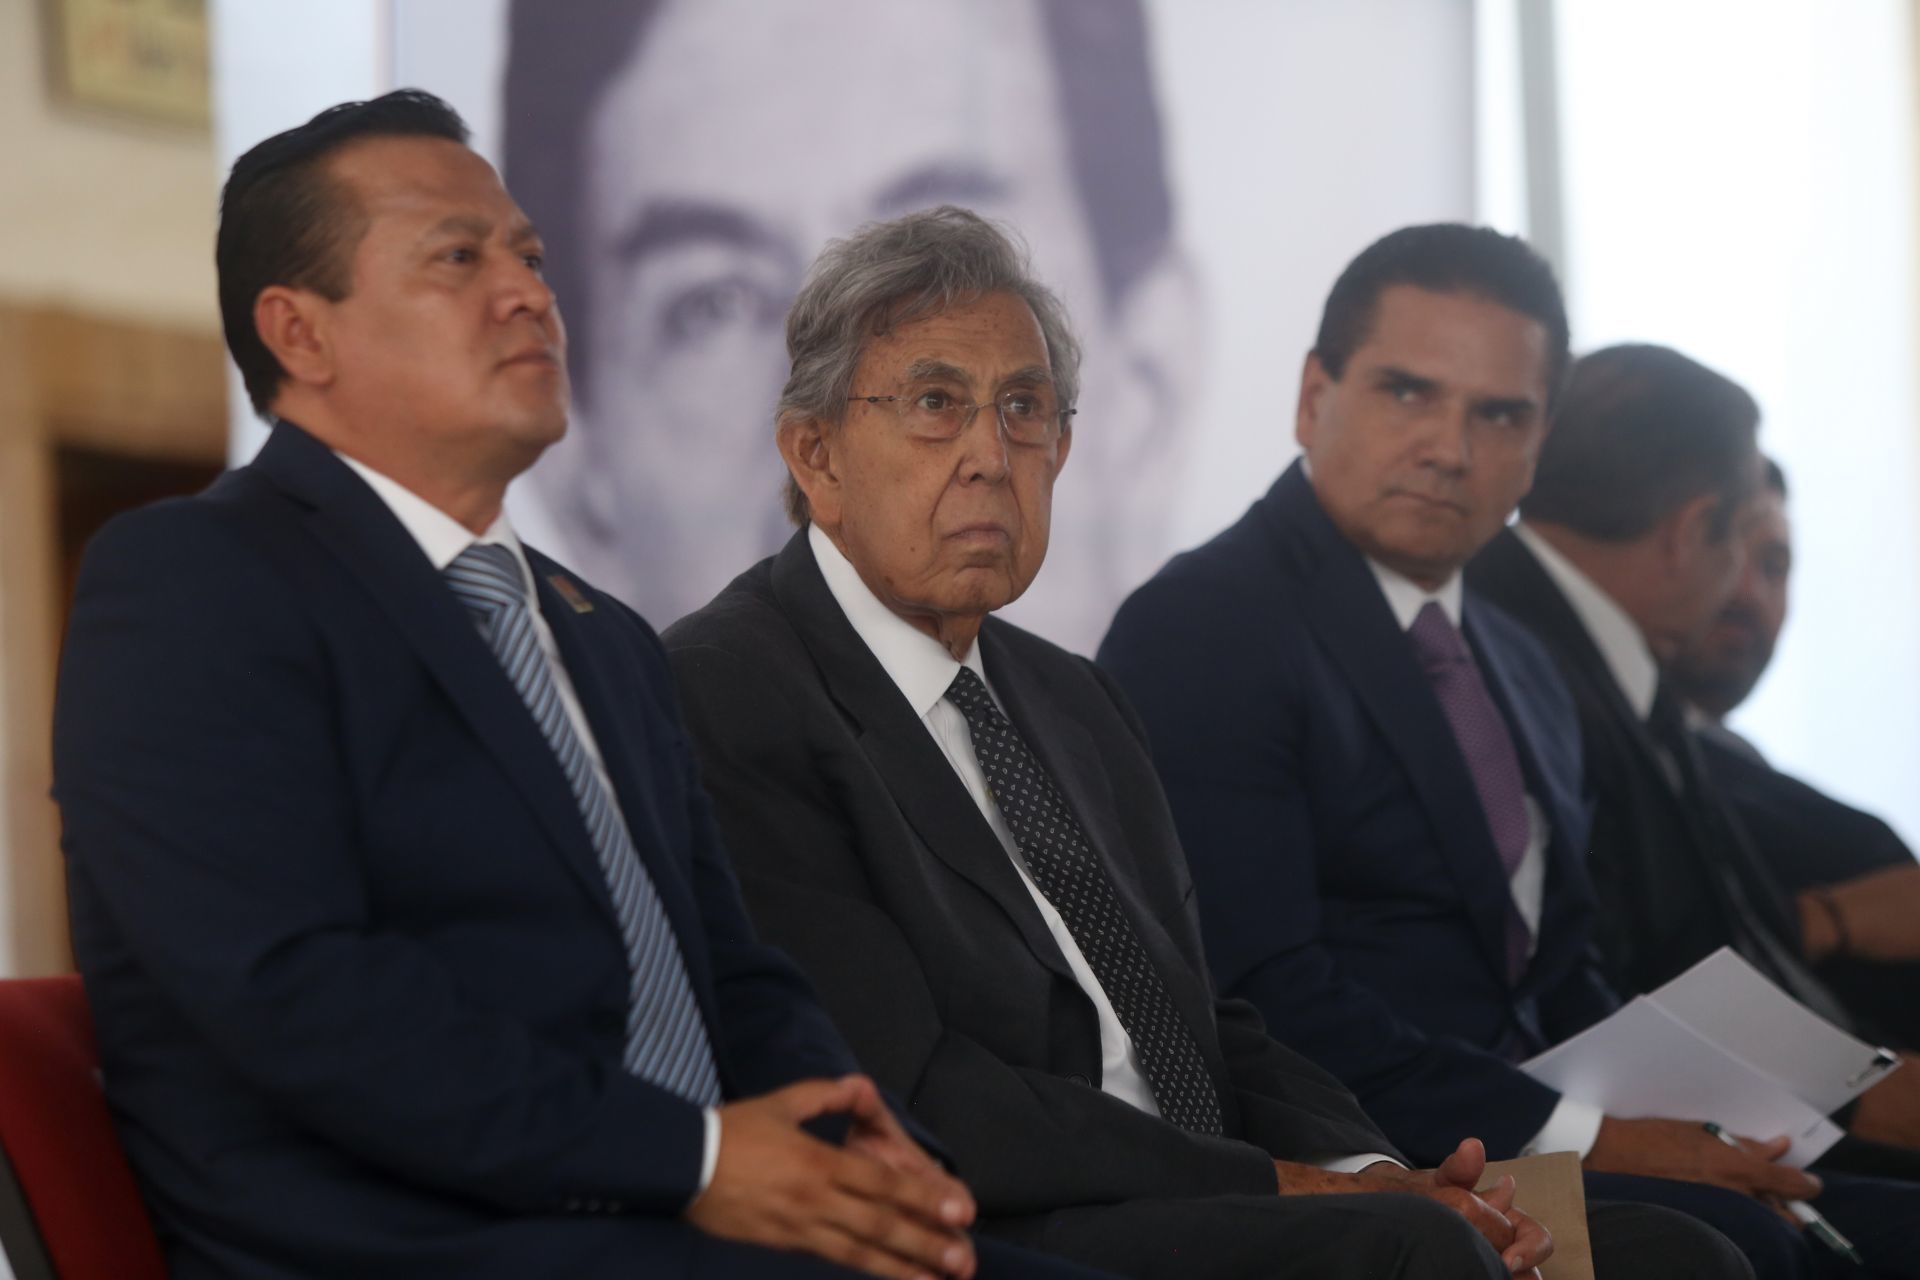 Difícilmente diría que tenemos un gobierno de izquierda: Cuauhtémoc Cárdenas